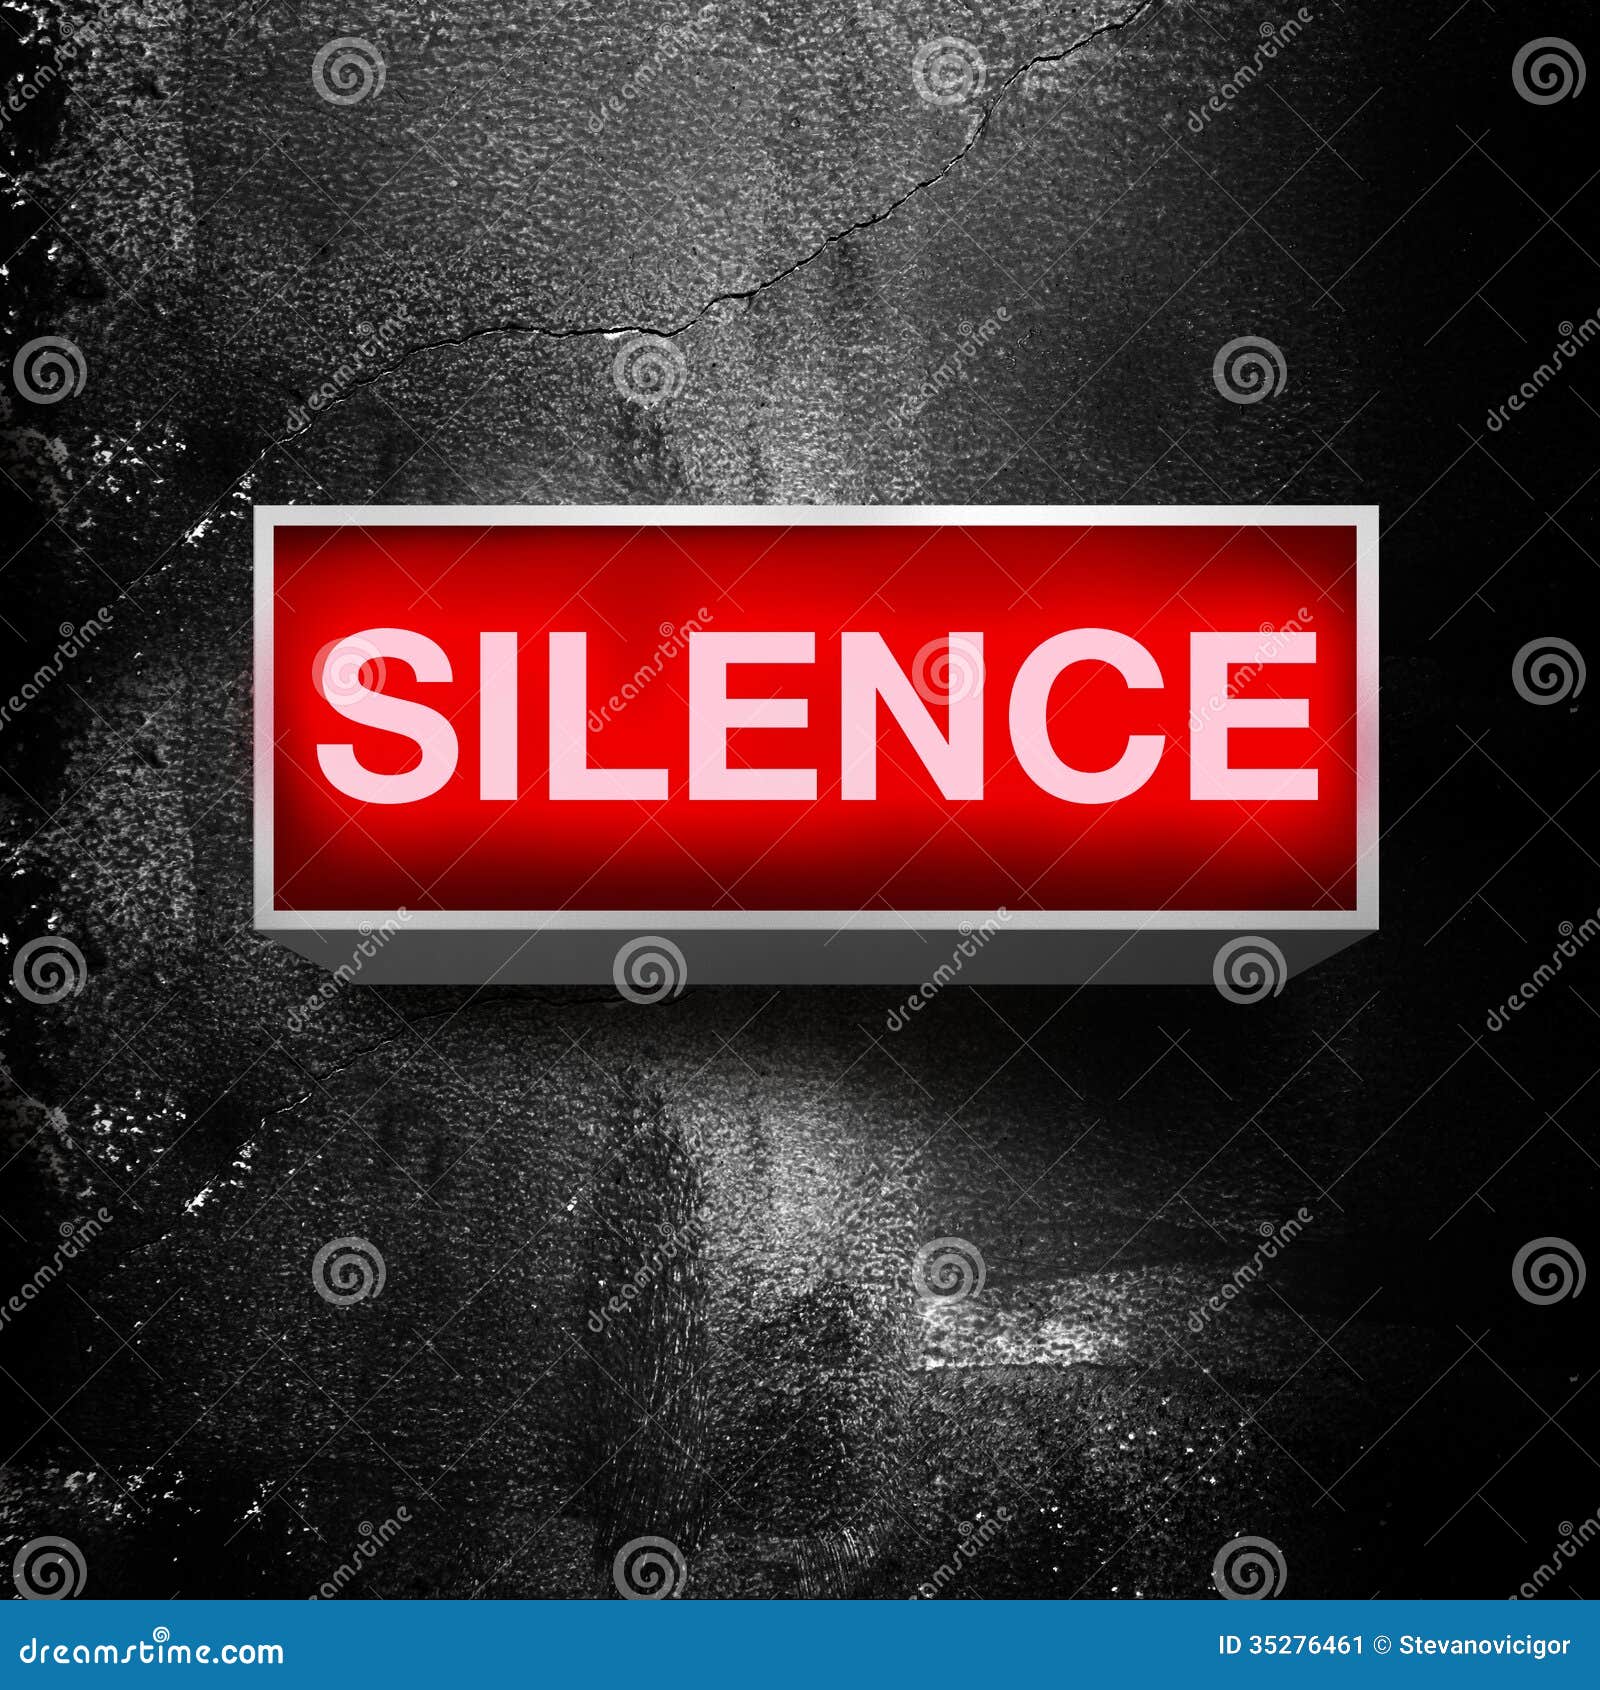 silence please